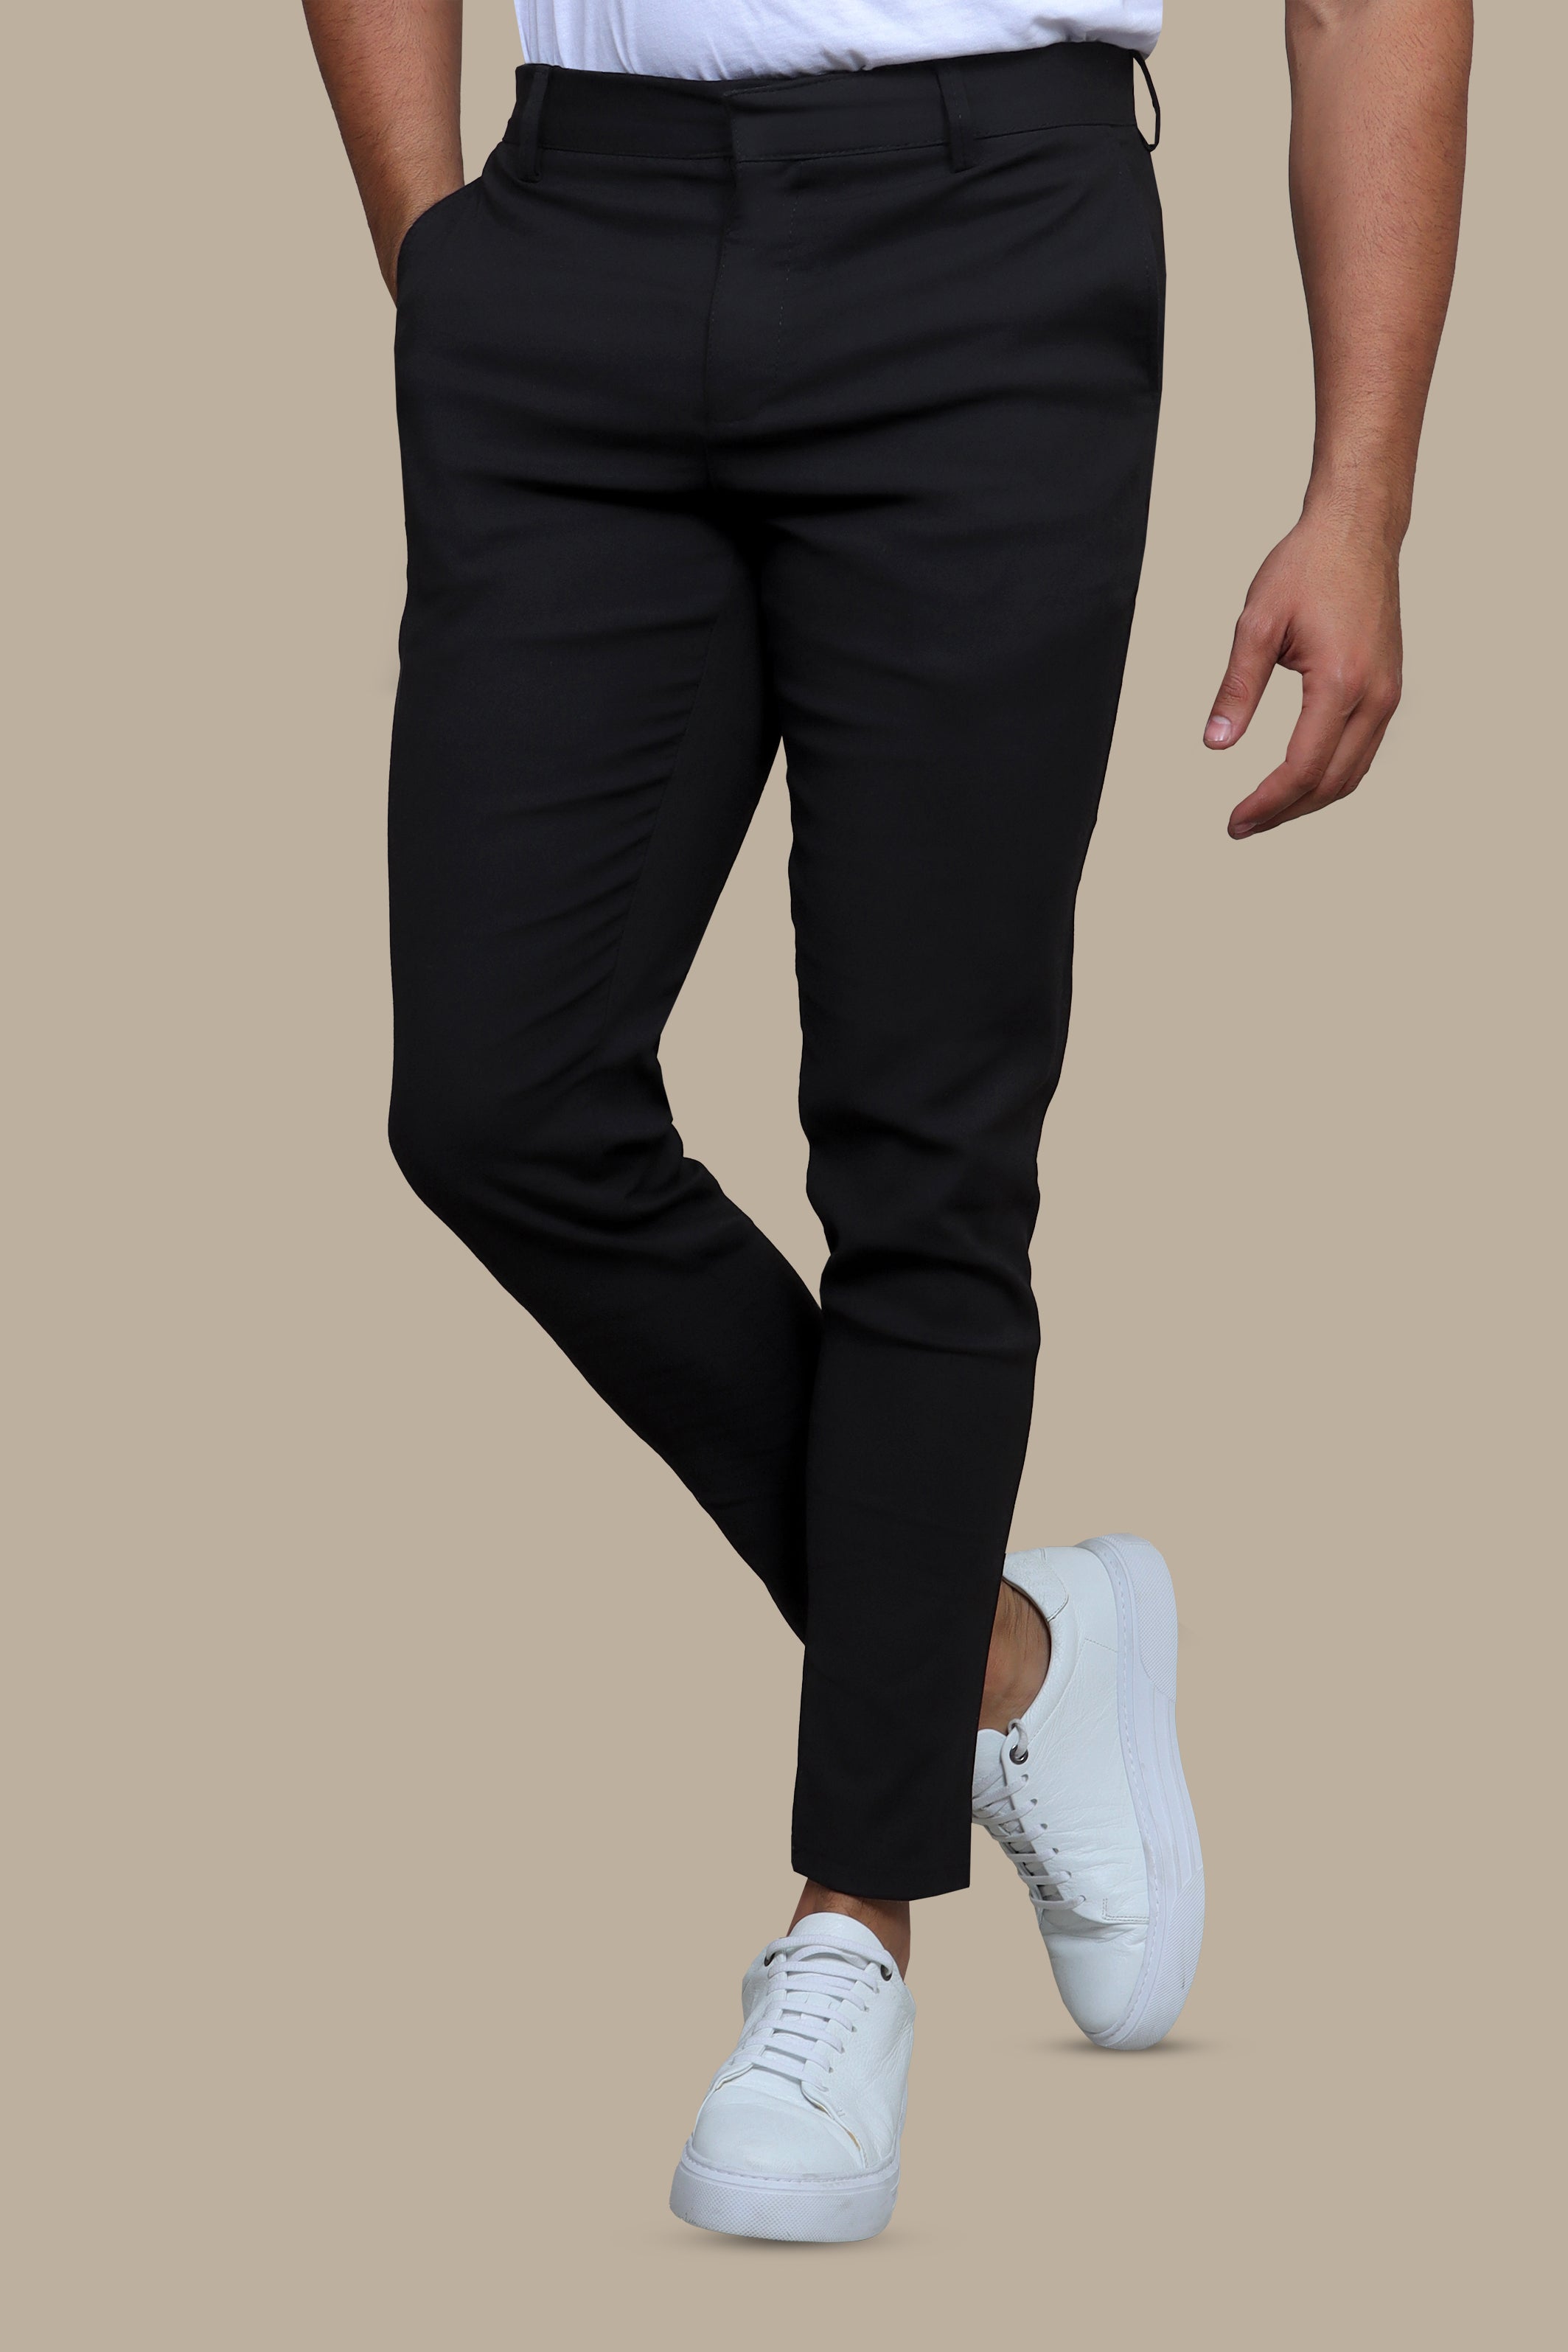 Black Lycra Fashion Trouser